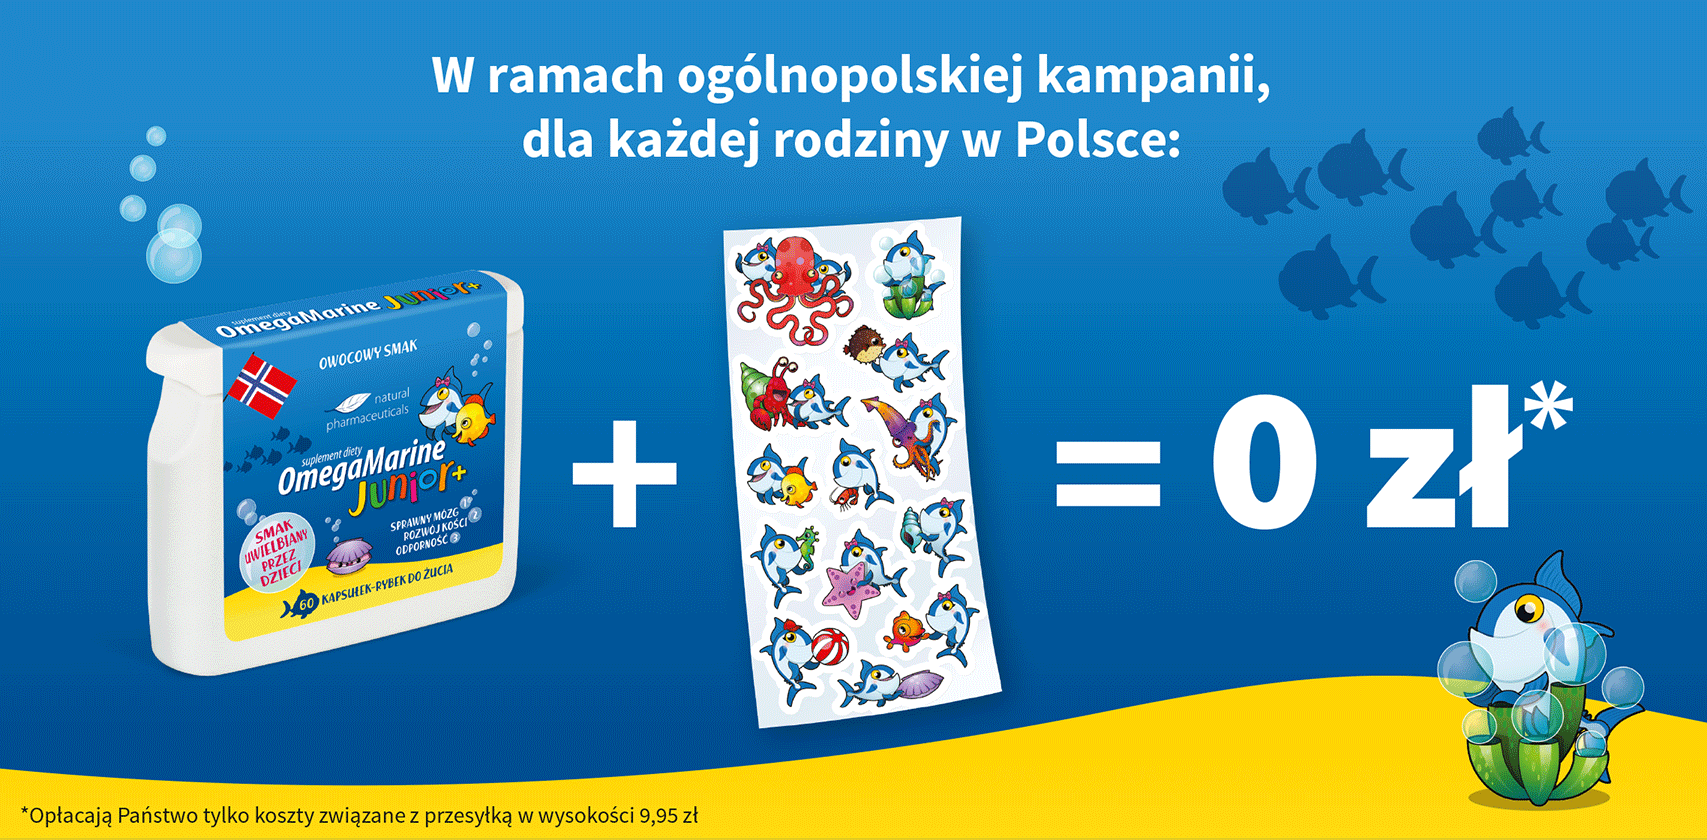 W ramach kampanii organizowanej przez Natural Pharmaceuticals, dla każdej rodziny w Polsce: